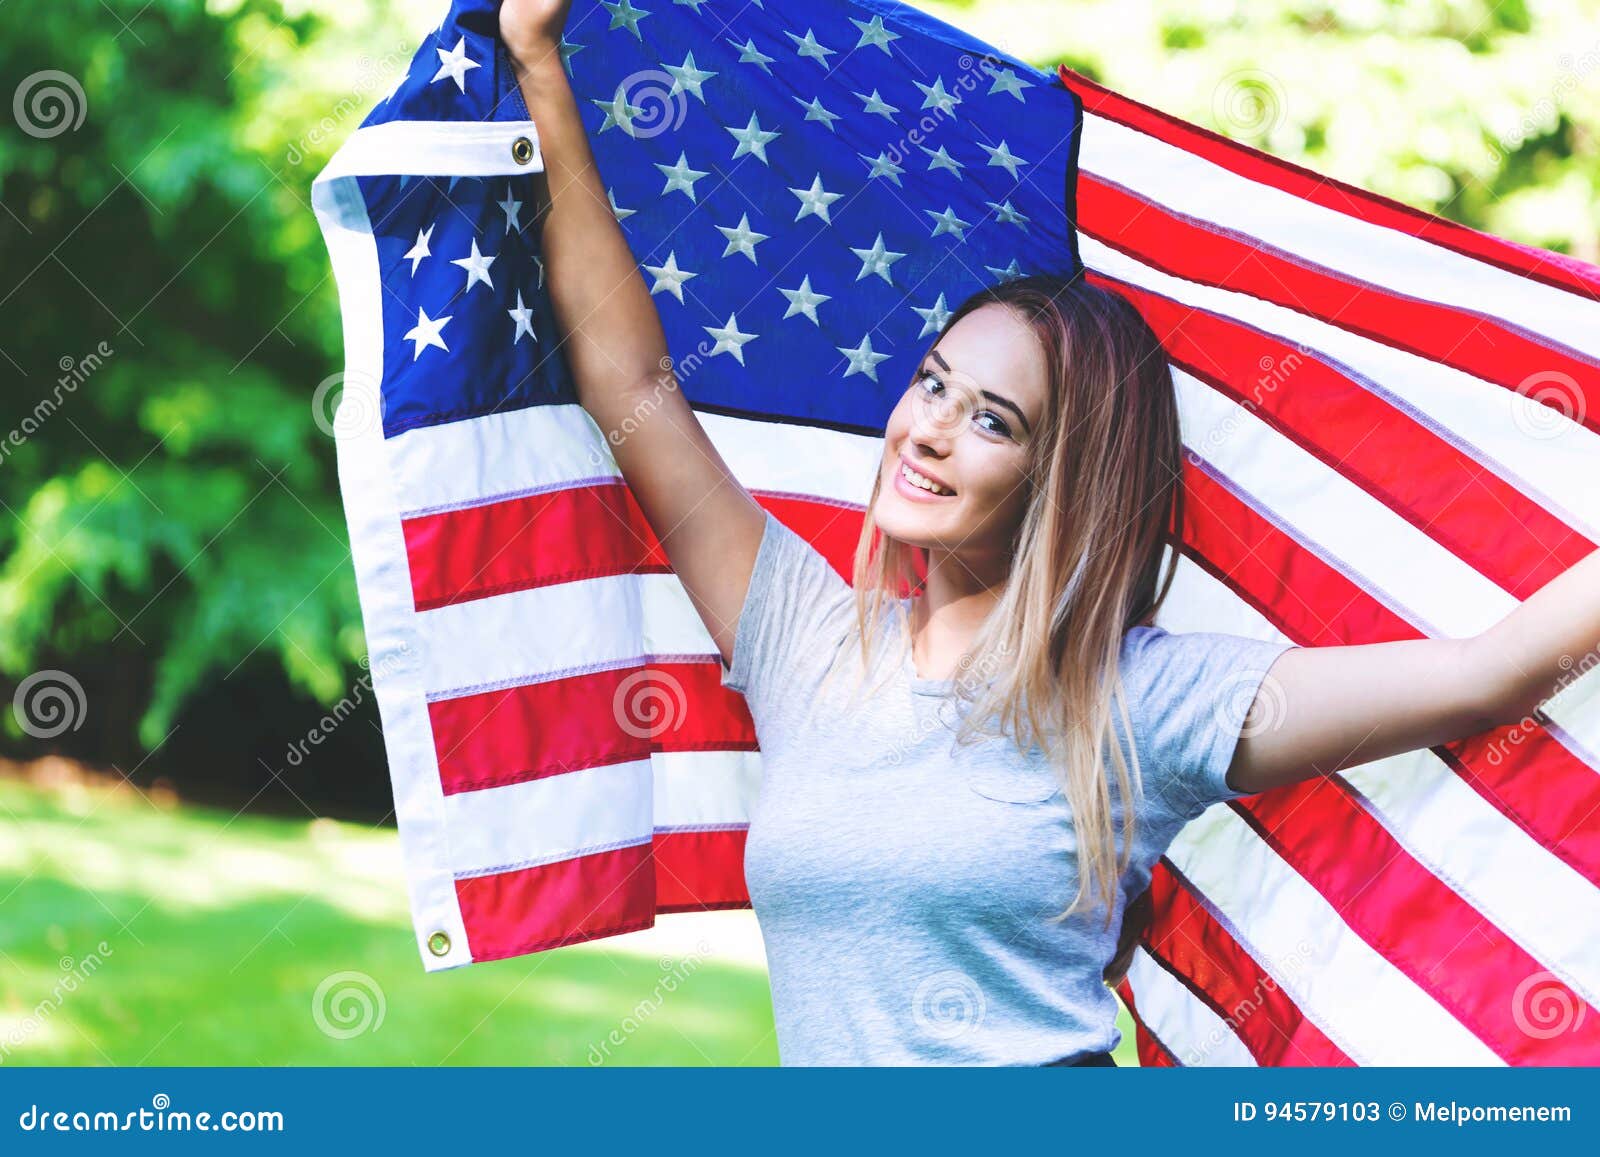 Русский девушки в америке. Девушка с американским флагом. Баба с флагом США. Девушка с английским и американским флагом. Девушка на фонеамерикансого флага.